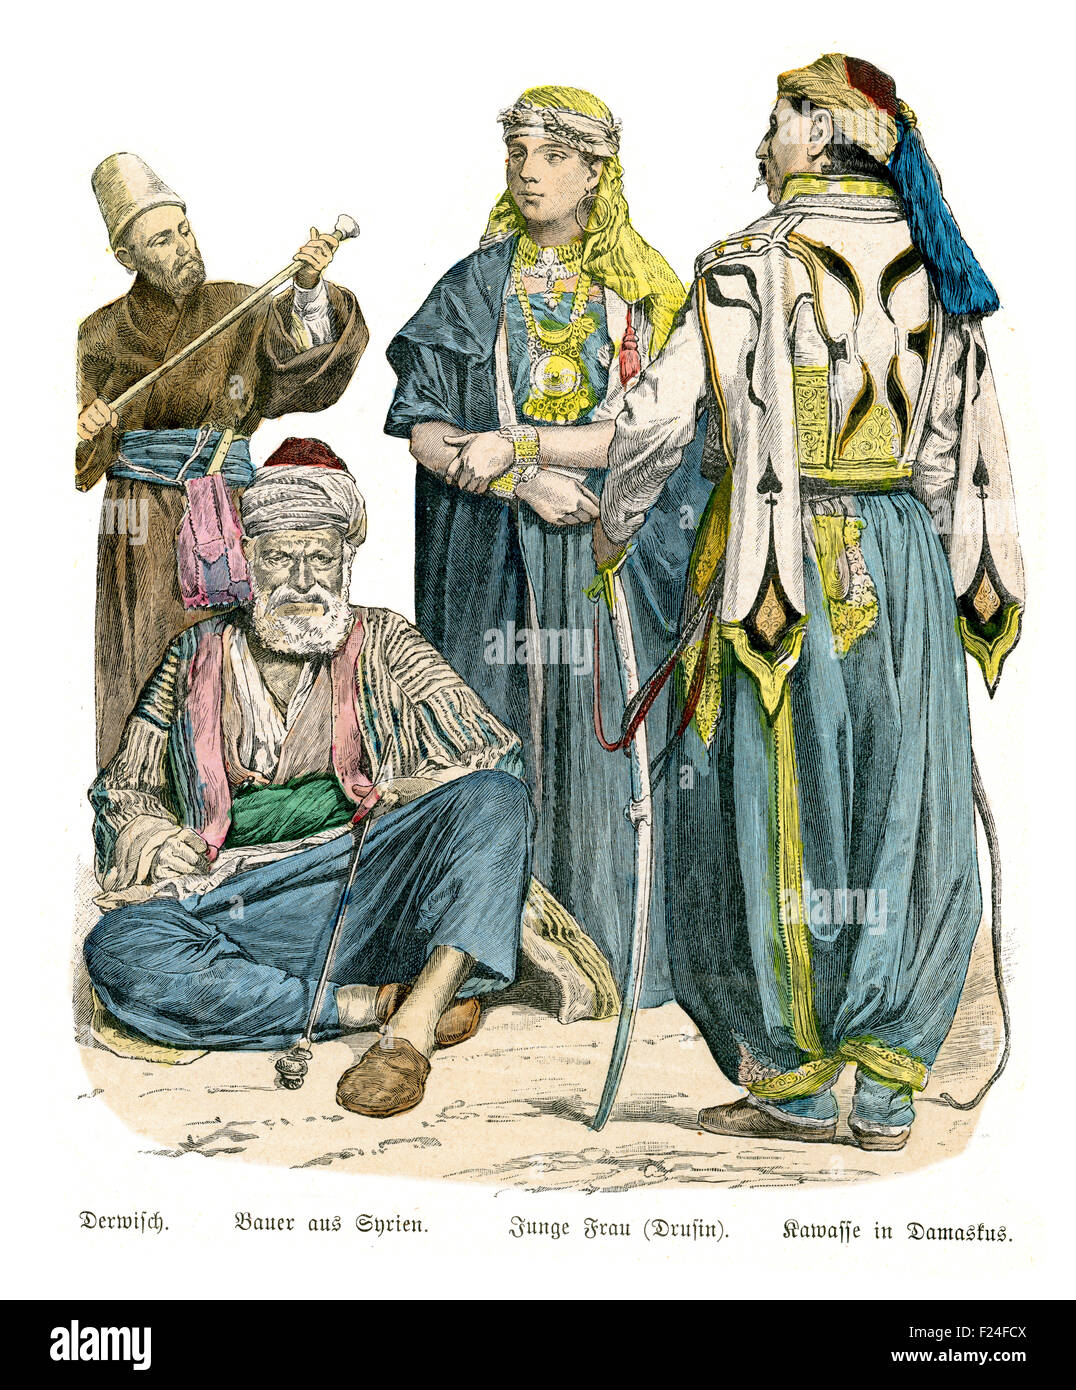 Costumes de l'Empire Ottoman du xixe siècle, Derviche, paysan de la Syrie, jeune femme druze, Kawasse (policier) de Damas. Banque D'Images